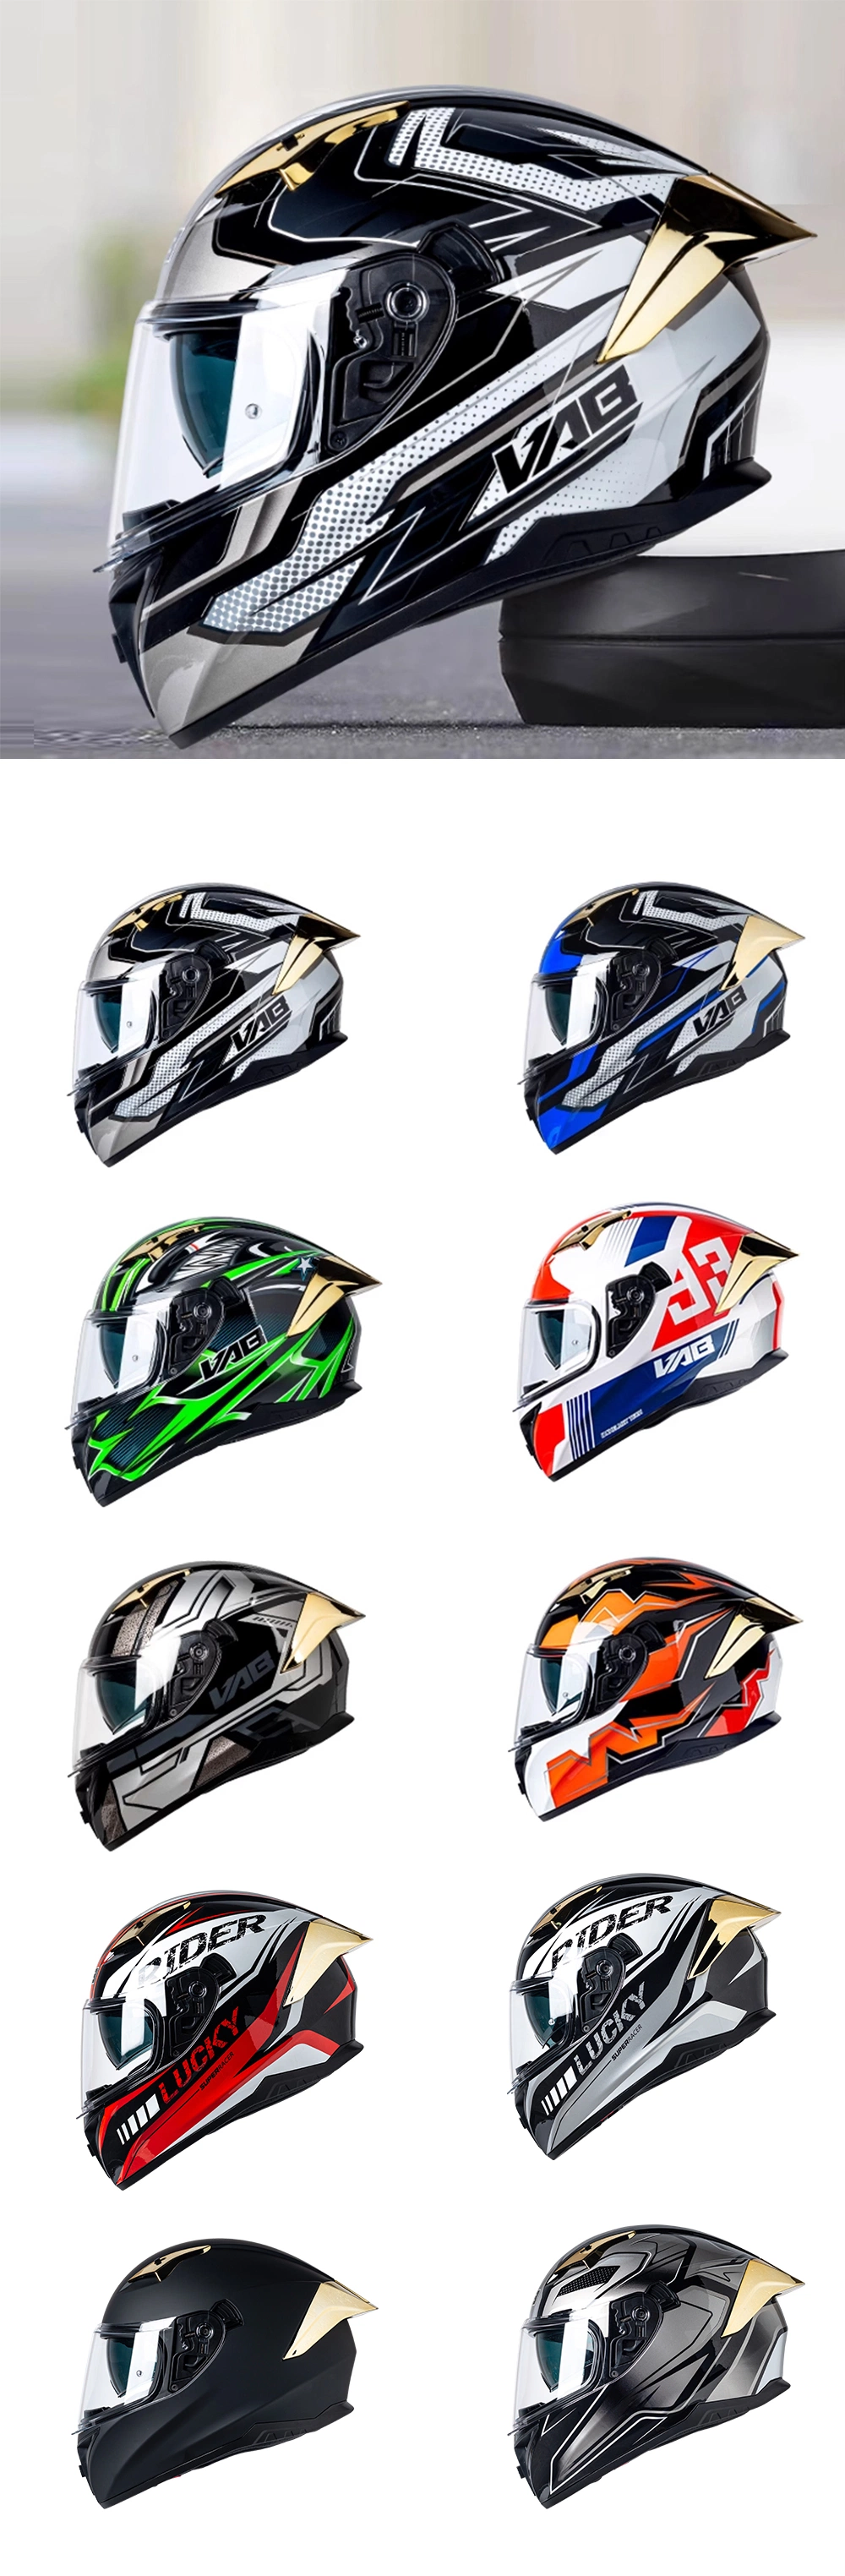 Hot-Selling Motorcycle Helmet ABS Full-Face Helmet Low-Cost High-End Helmet Motorcycle Accessories Helmet